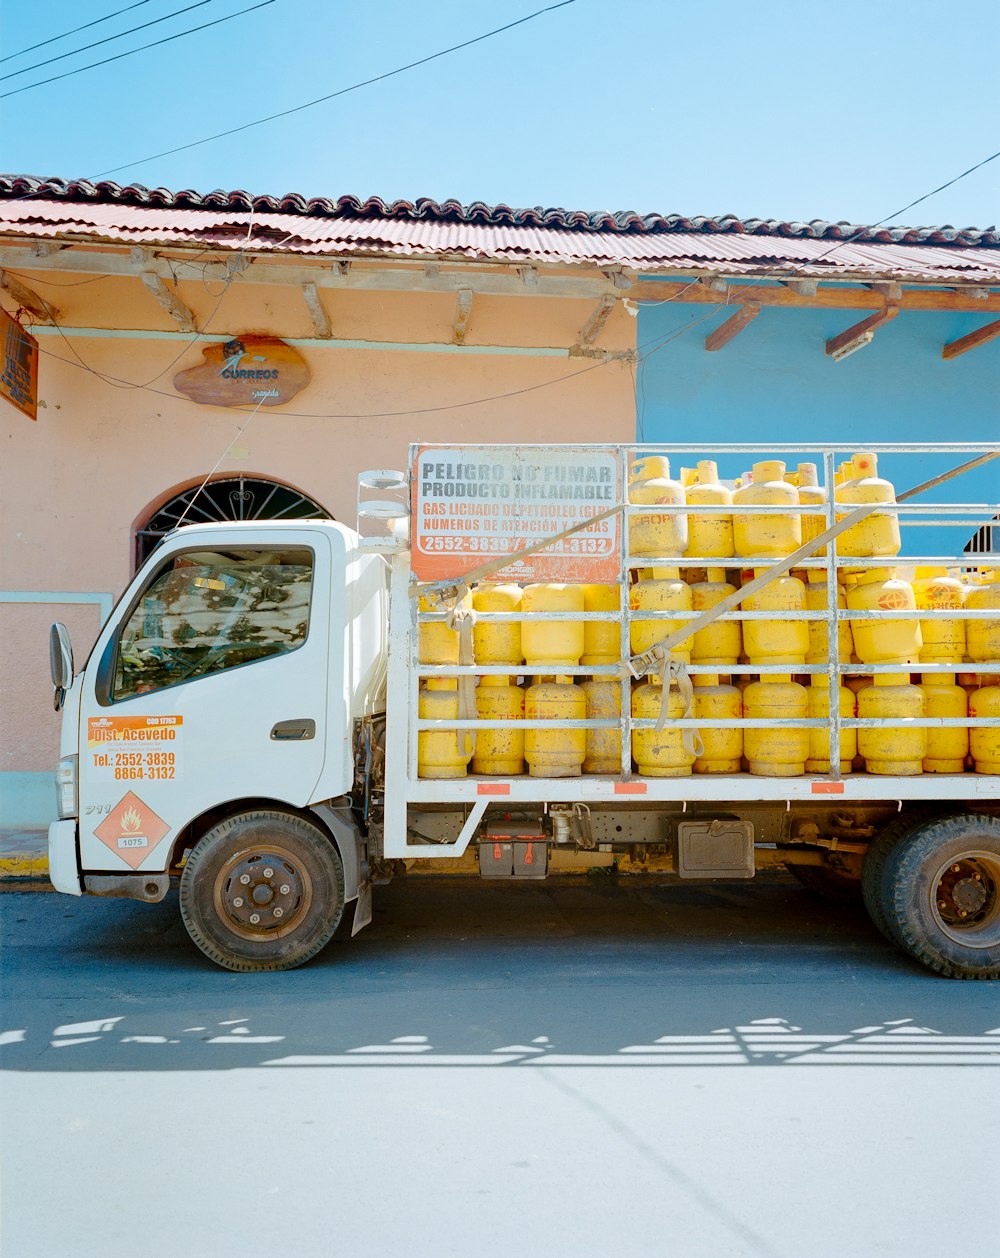 Un camion avec beaucoup de conteneurs jaunes à l’arrière